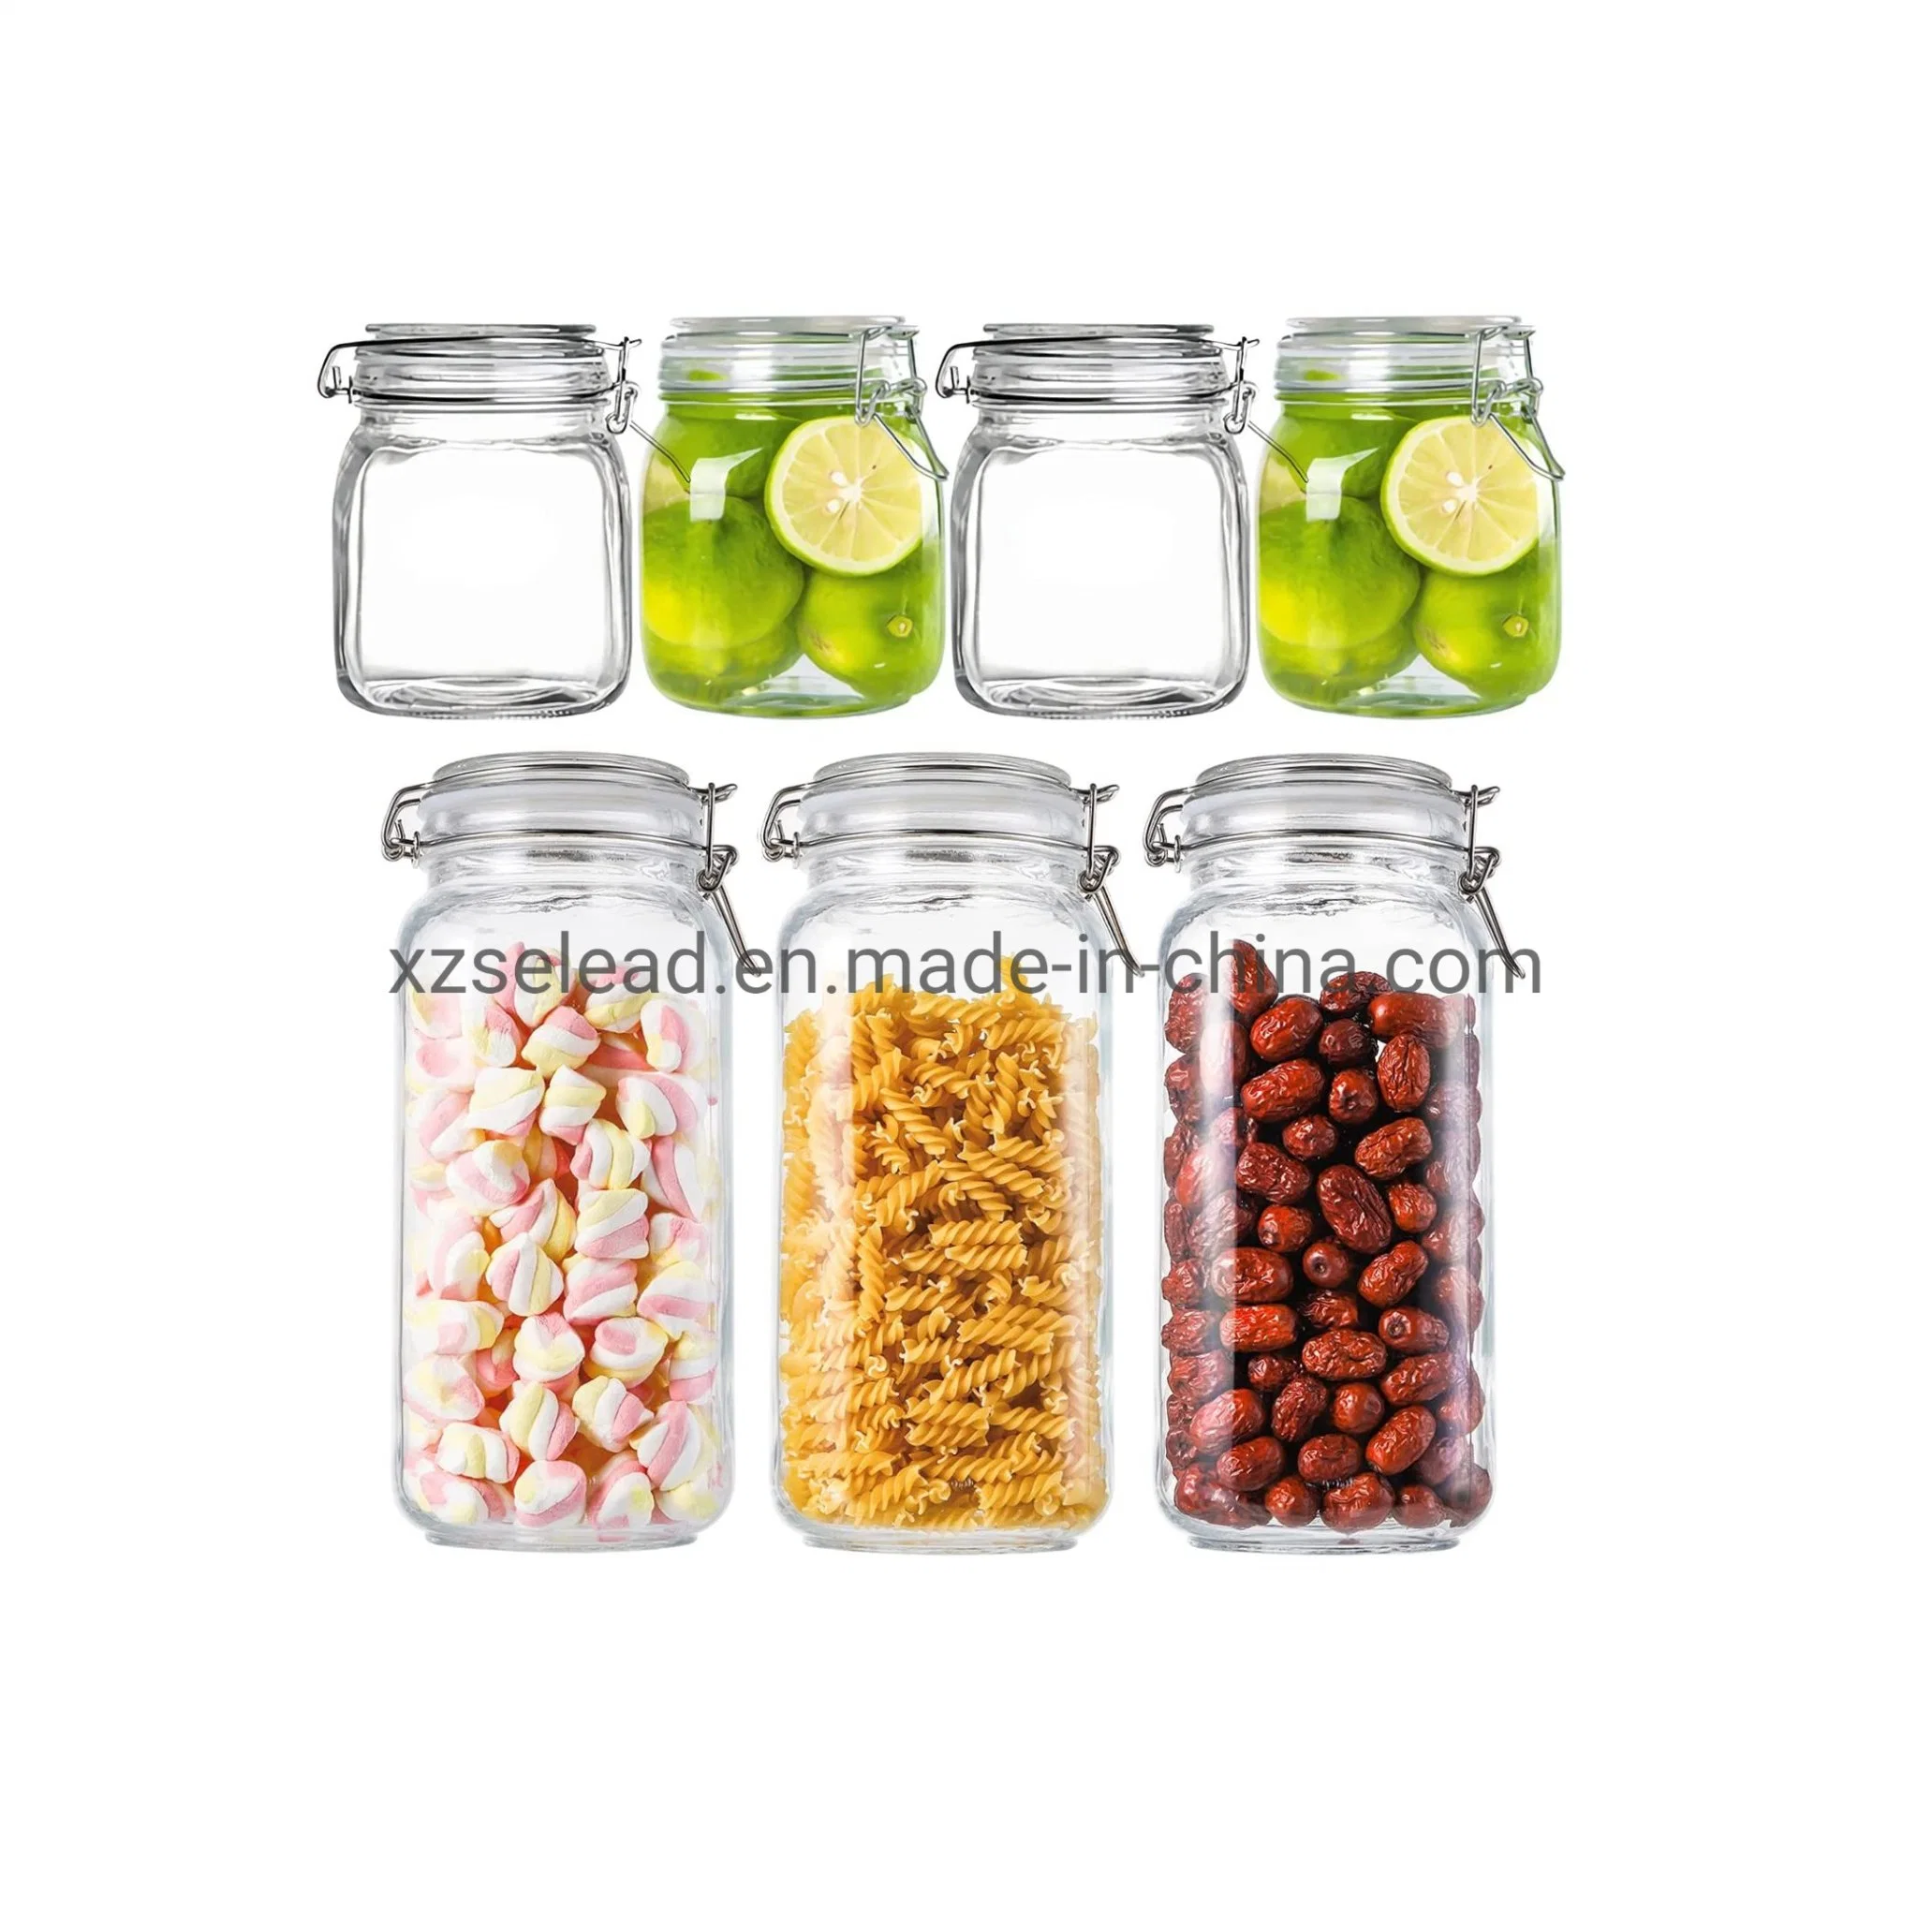 أواني زجاجية لدورق تخزين الزجاج مع غطاء زجاجي لتخزين الطعام استخدام المطبخ